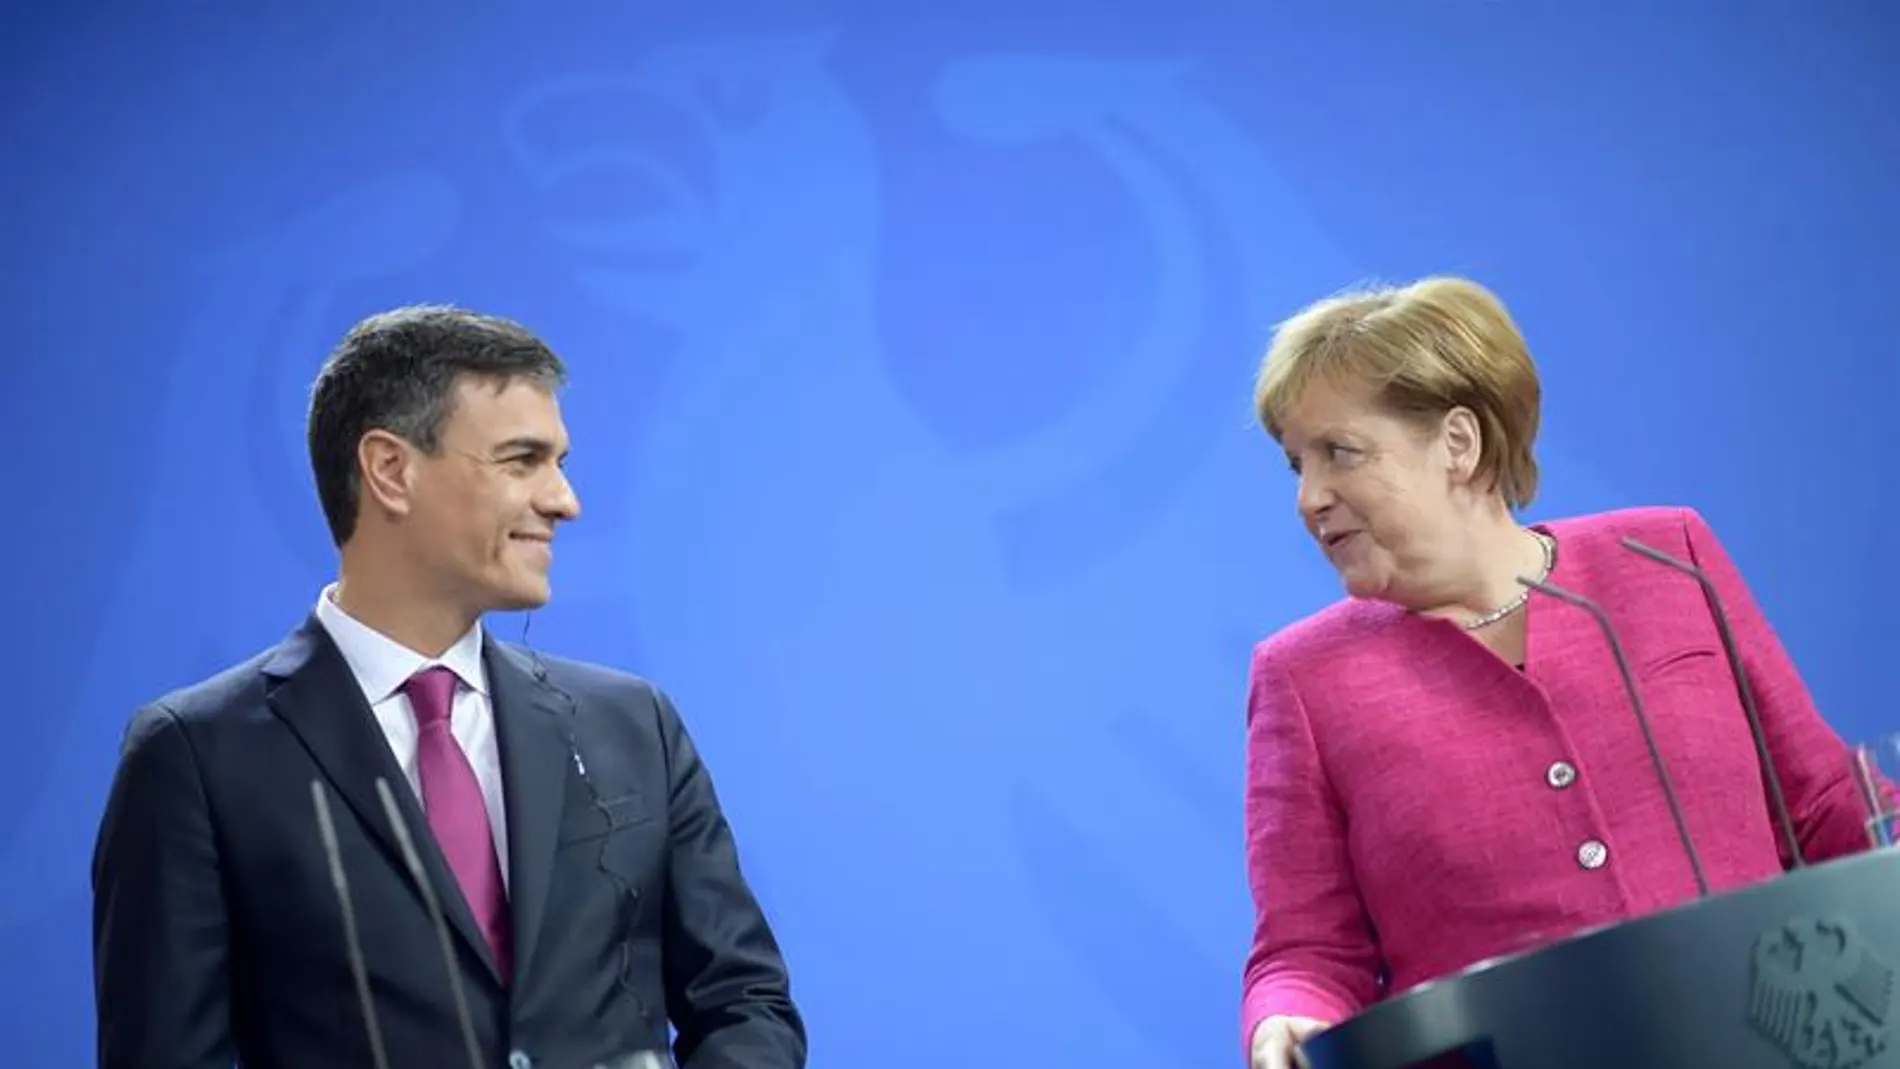 Pedro Sánchez y Angela Merkel